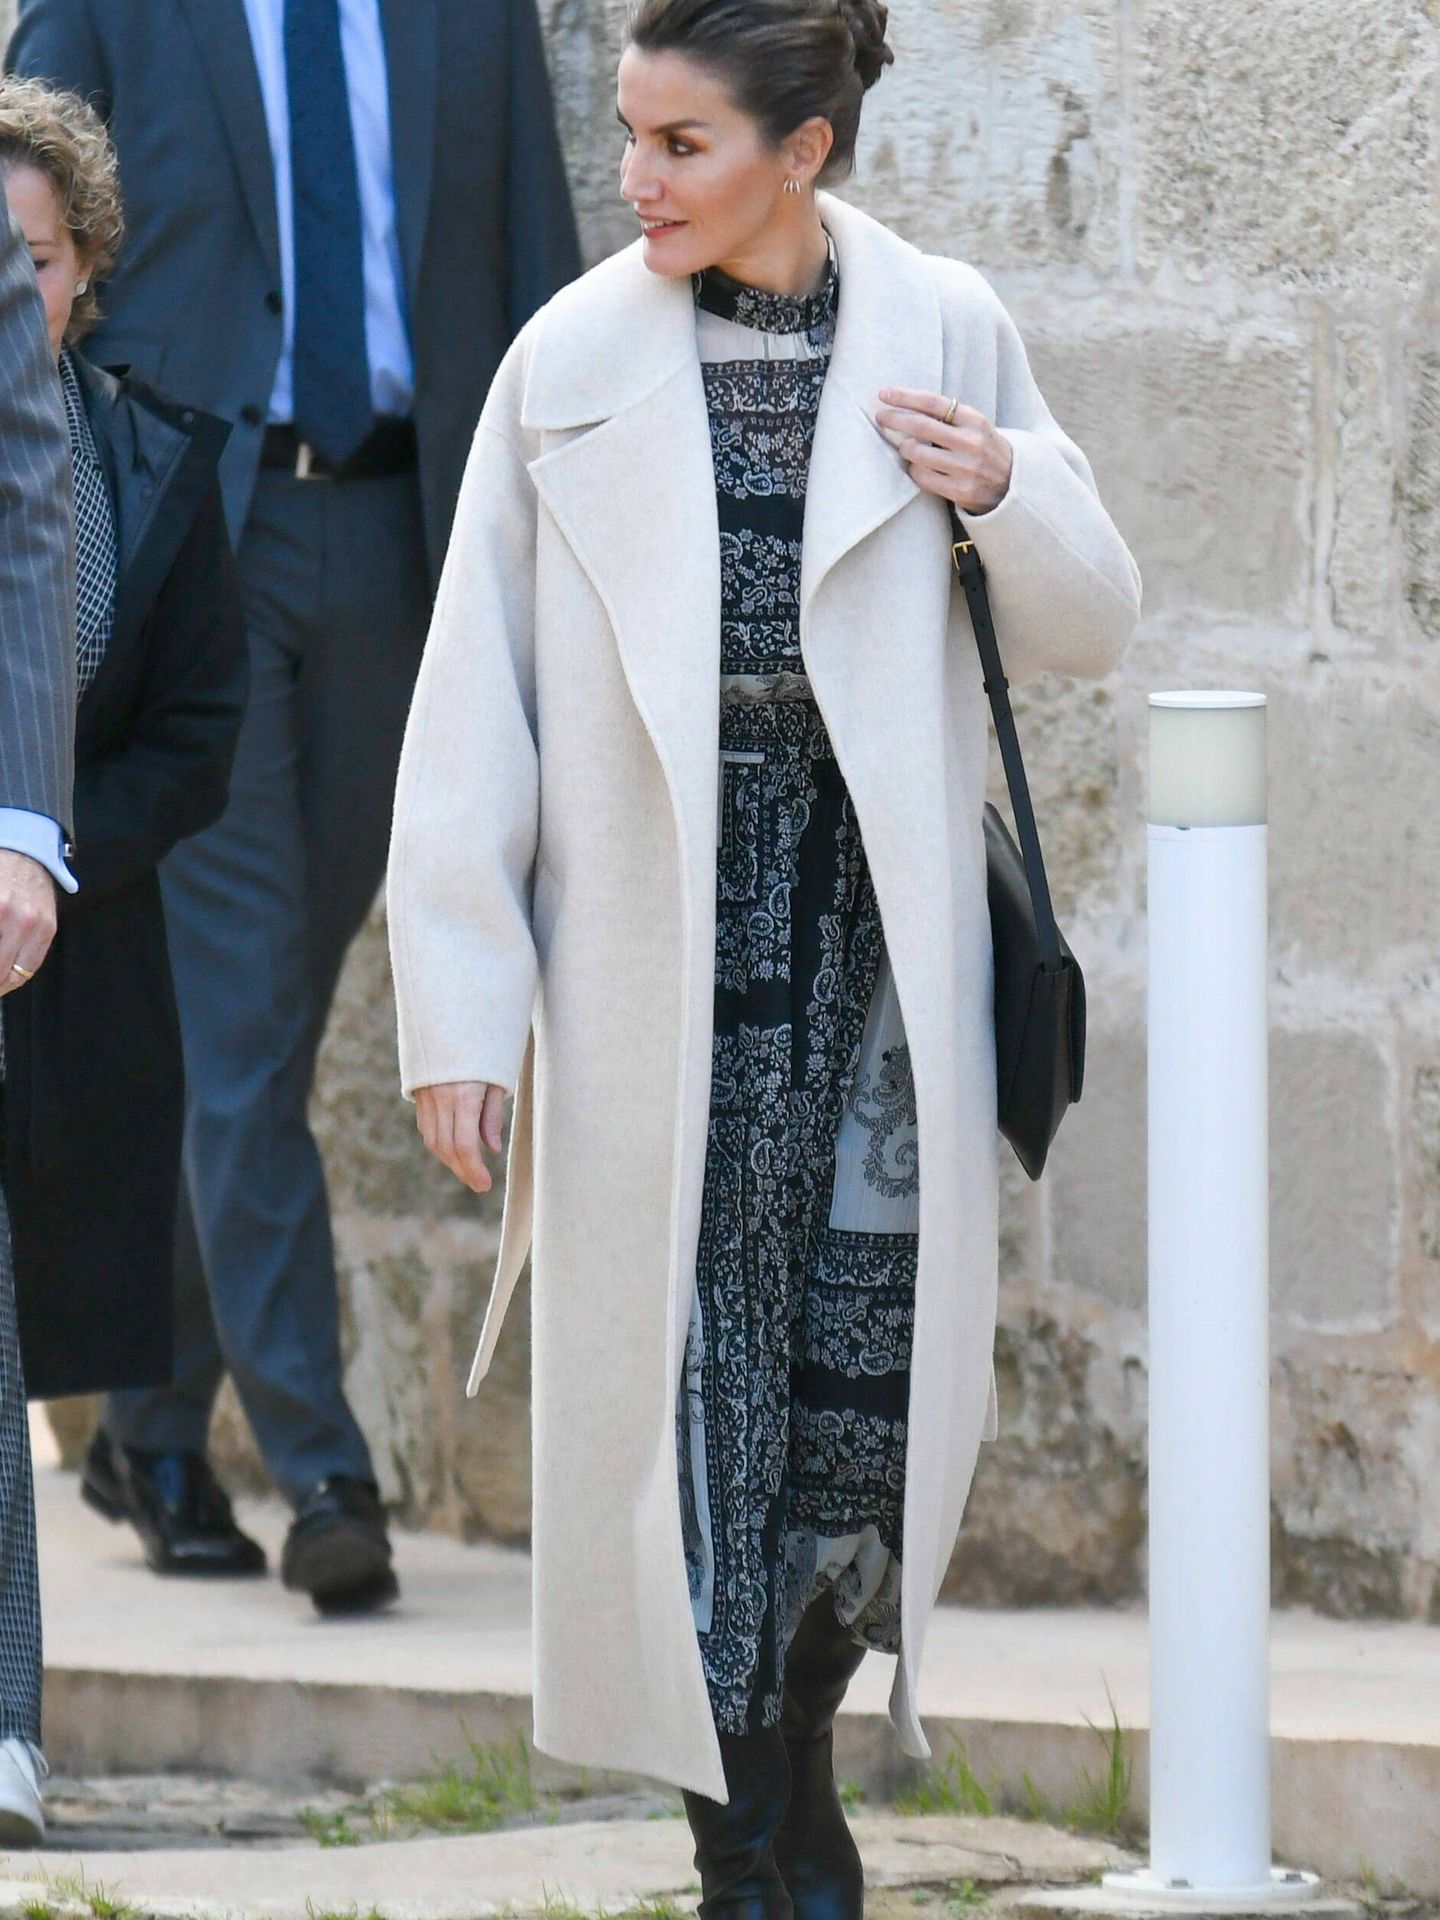 La reina Letizia, con vestido en blanco y negro de Mango. (Gtres)